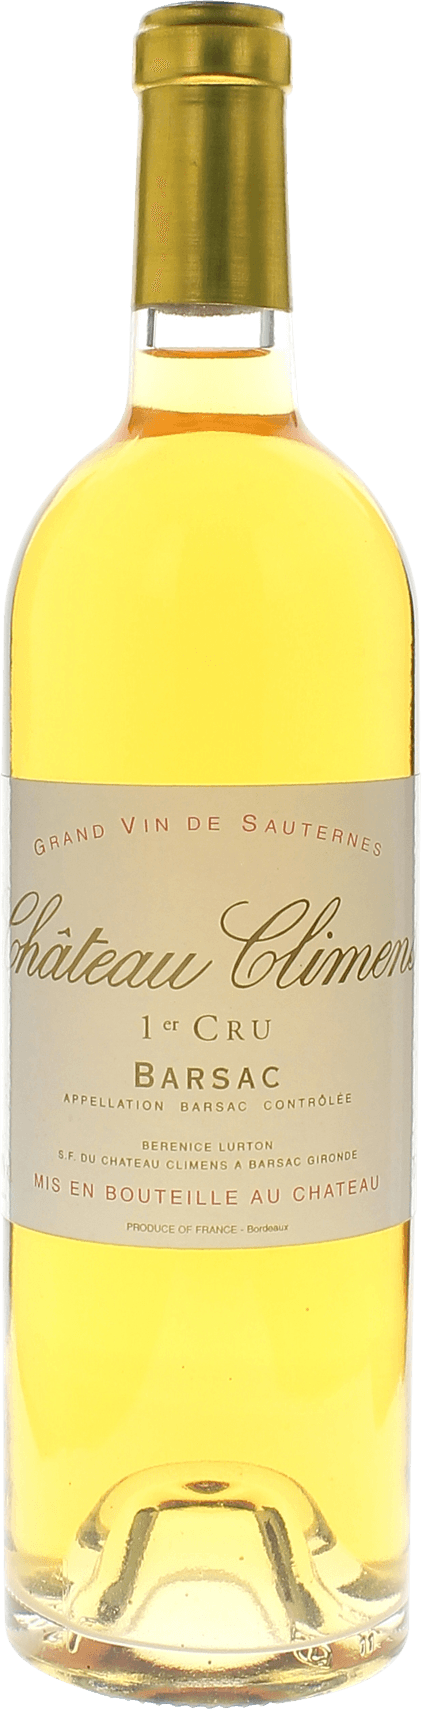 Climens 1990 1er cru Sauternes Barsac, Bordeaux blanc